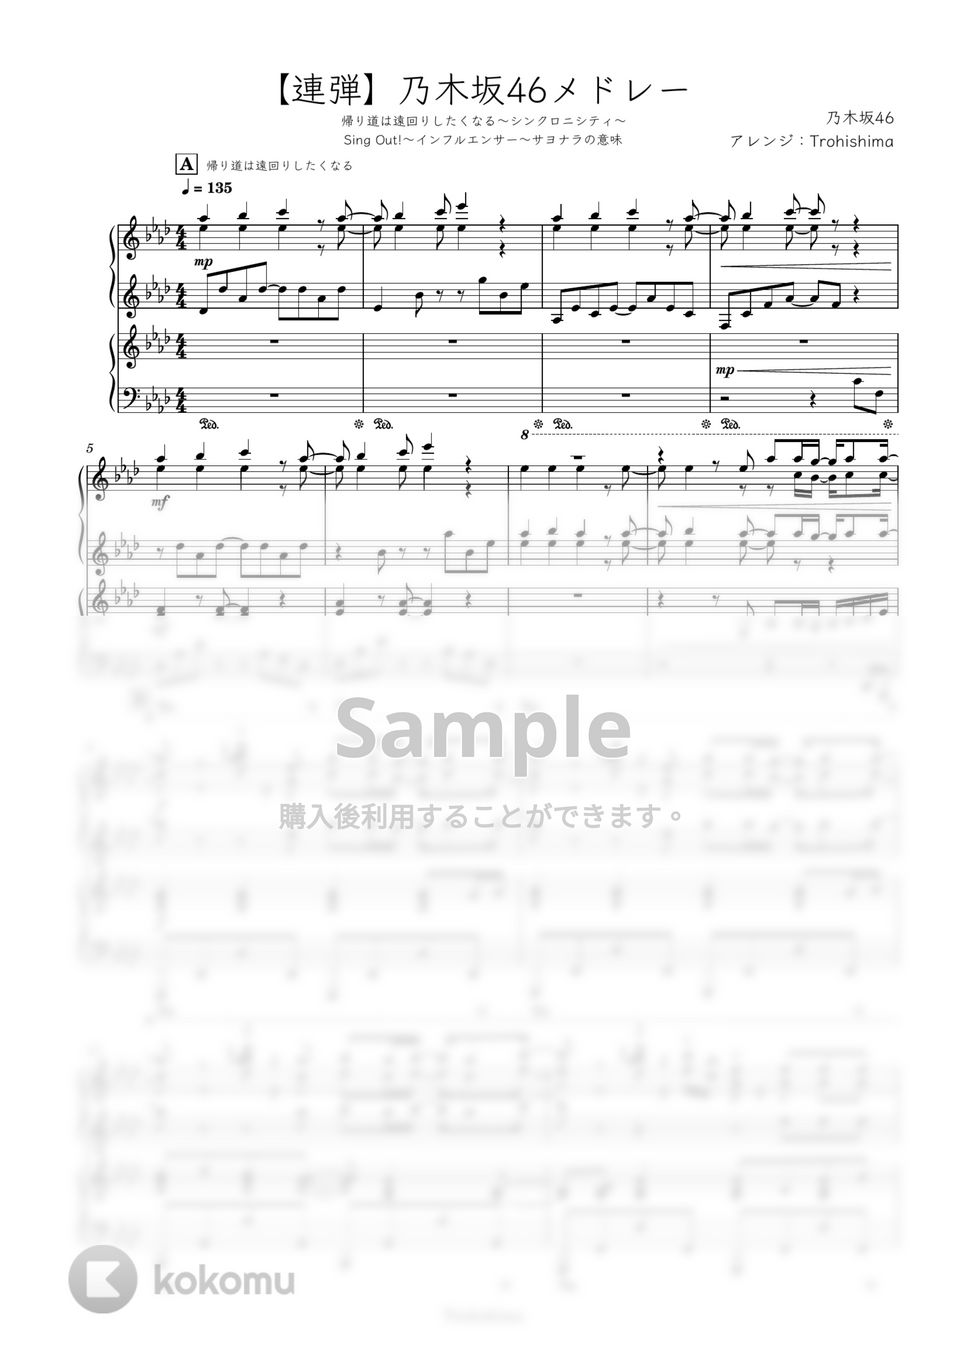 乃木坂46 - 乃木坂46連弾メドレー (ピアノ連弾メドレー) by Trohishima